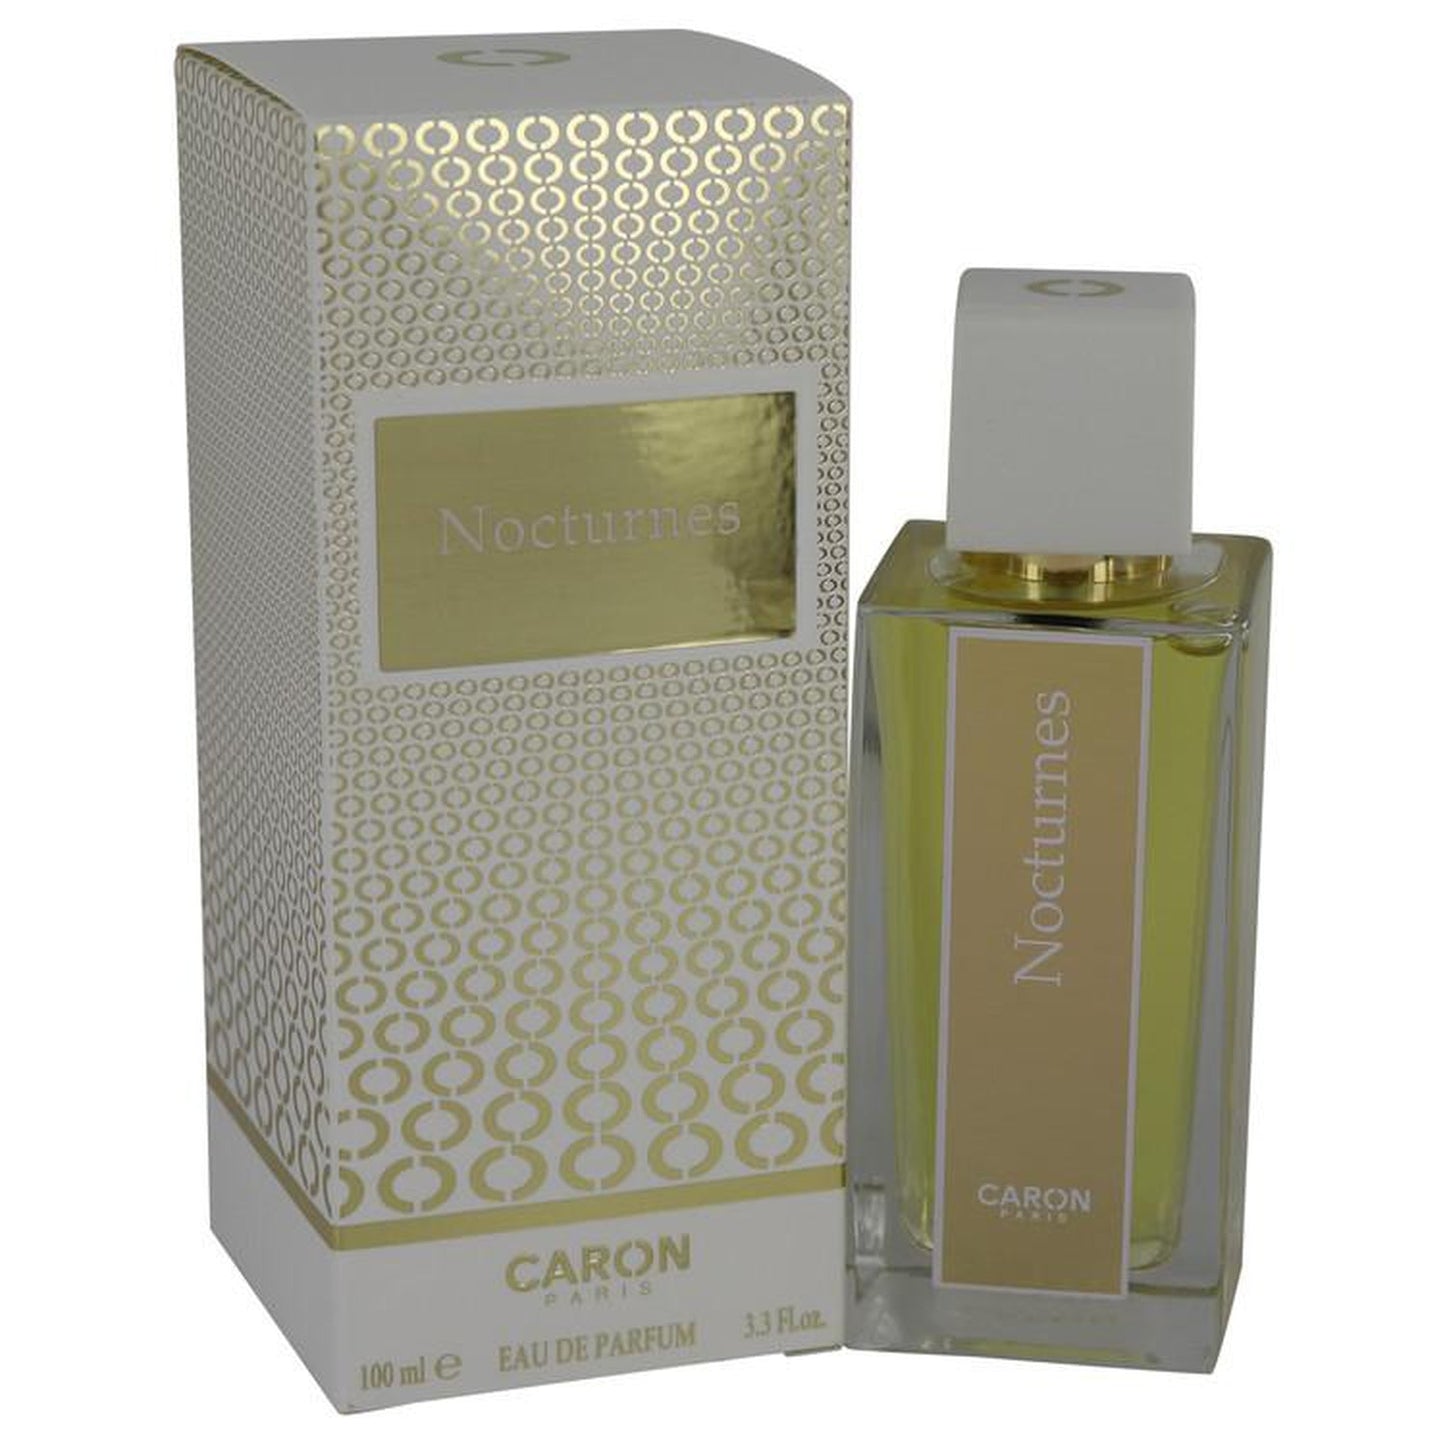 NOCTURNES D'CARON by Caron Eau De Parfum Spray (New Packaging) 3.4 oz